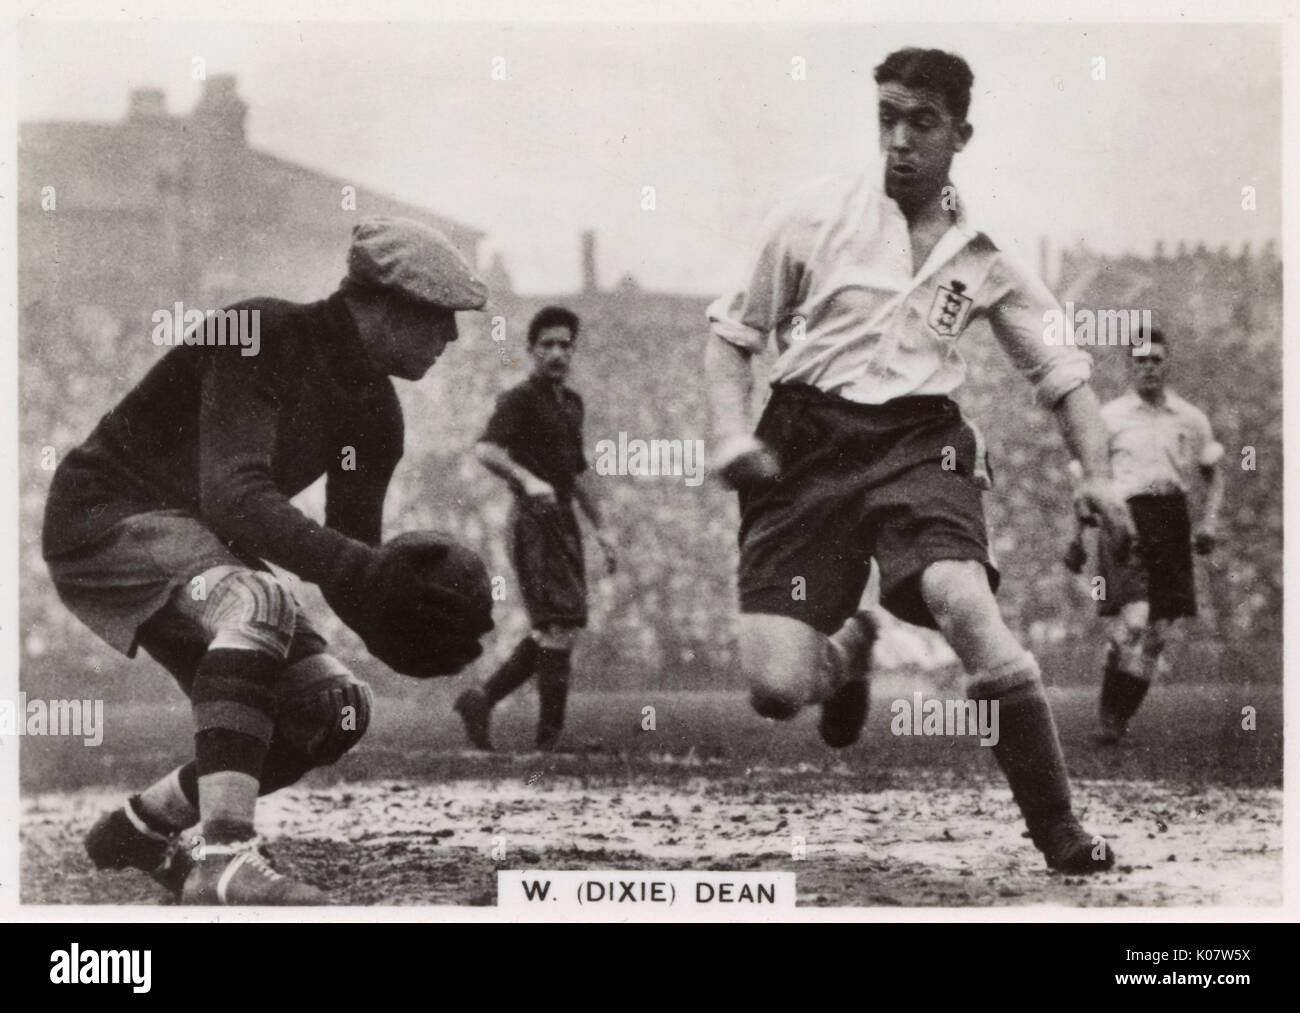 W R (Dixie) Dean (1907-1980), englischer Fußballspieler, Kapitän des FC Everton Football Team, hier (rechts) in Aktion bei einem Match gesehen. Datum: 1930 Stockfoto